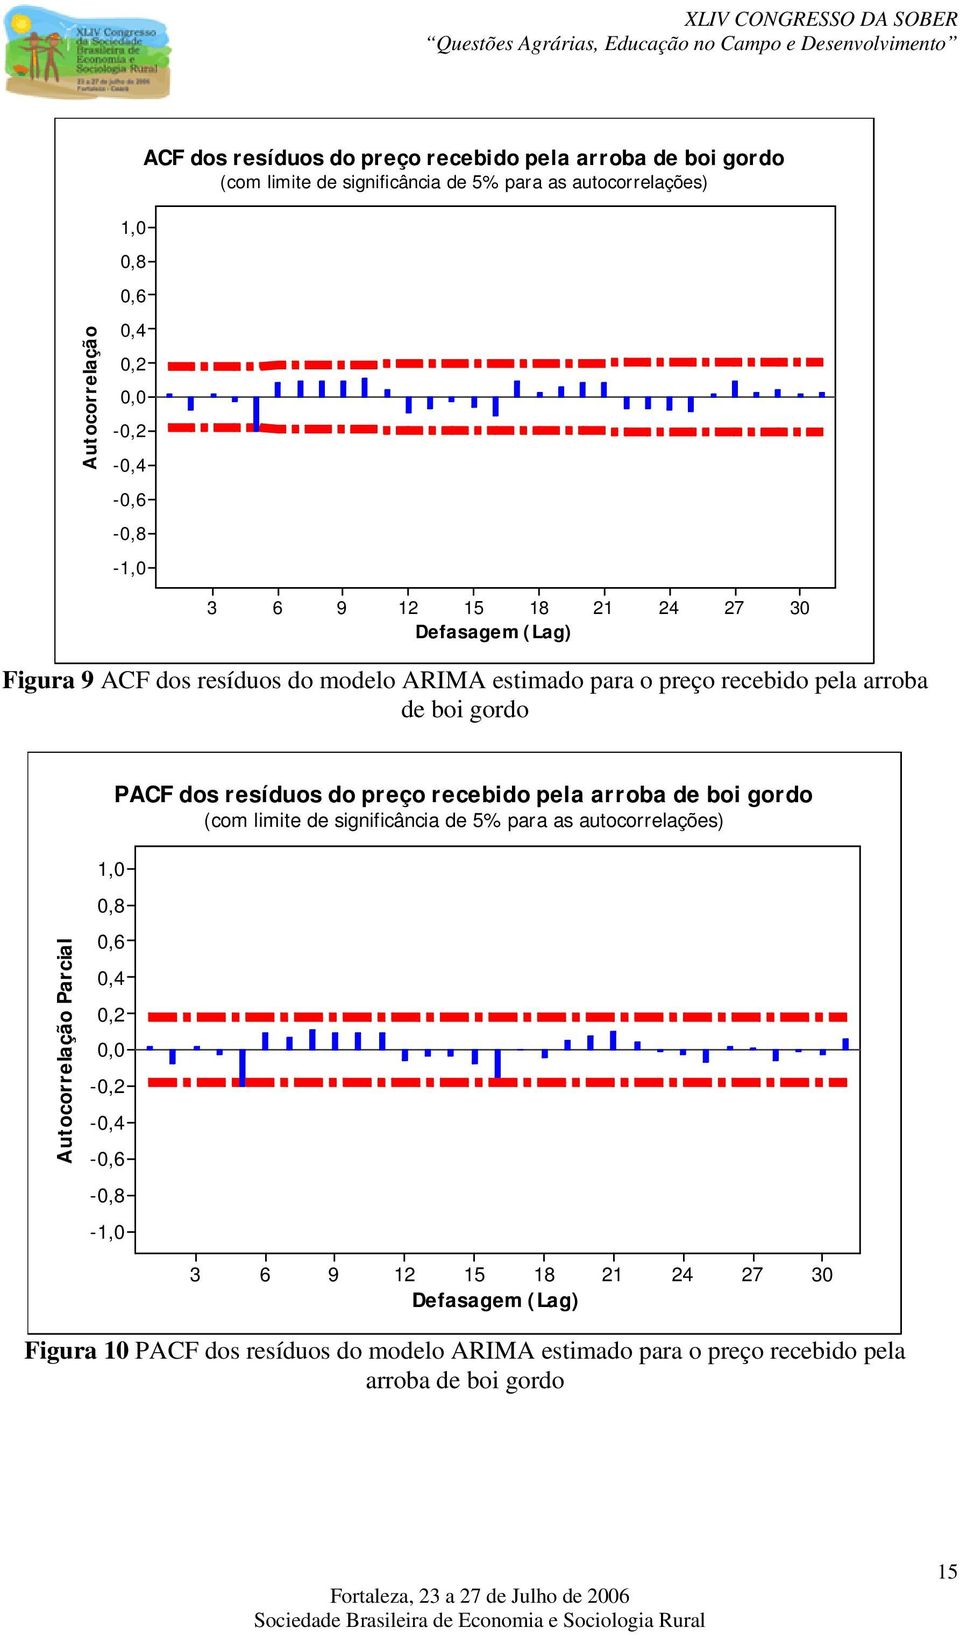 gordo,0 PACF dos resíduos do preço recebido pela arroba de boi gordo (com limie de significância de 5% para as auocorrelações) Auocorrelação Parcial 0,8